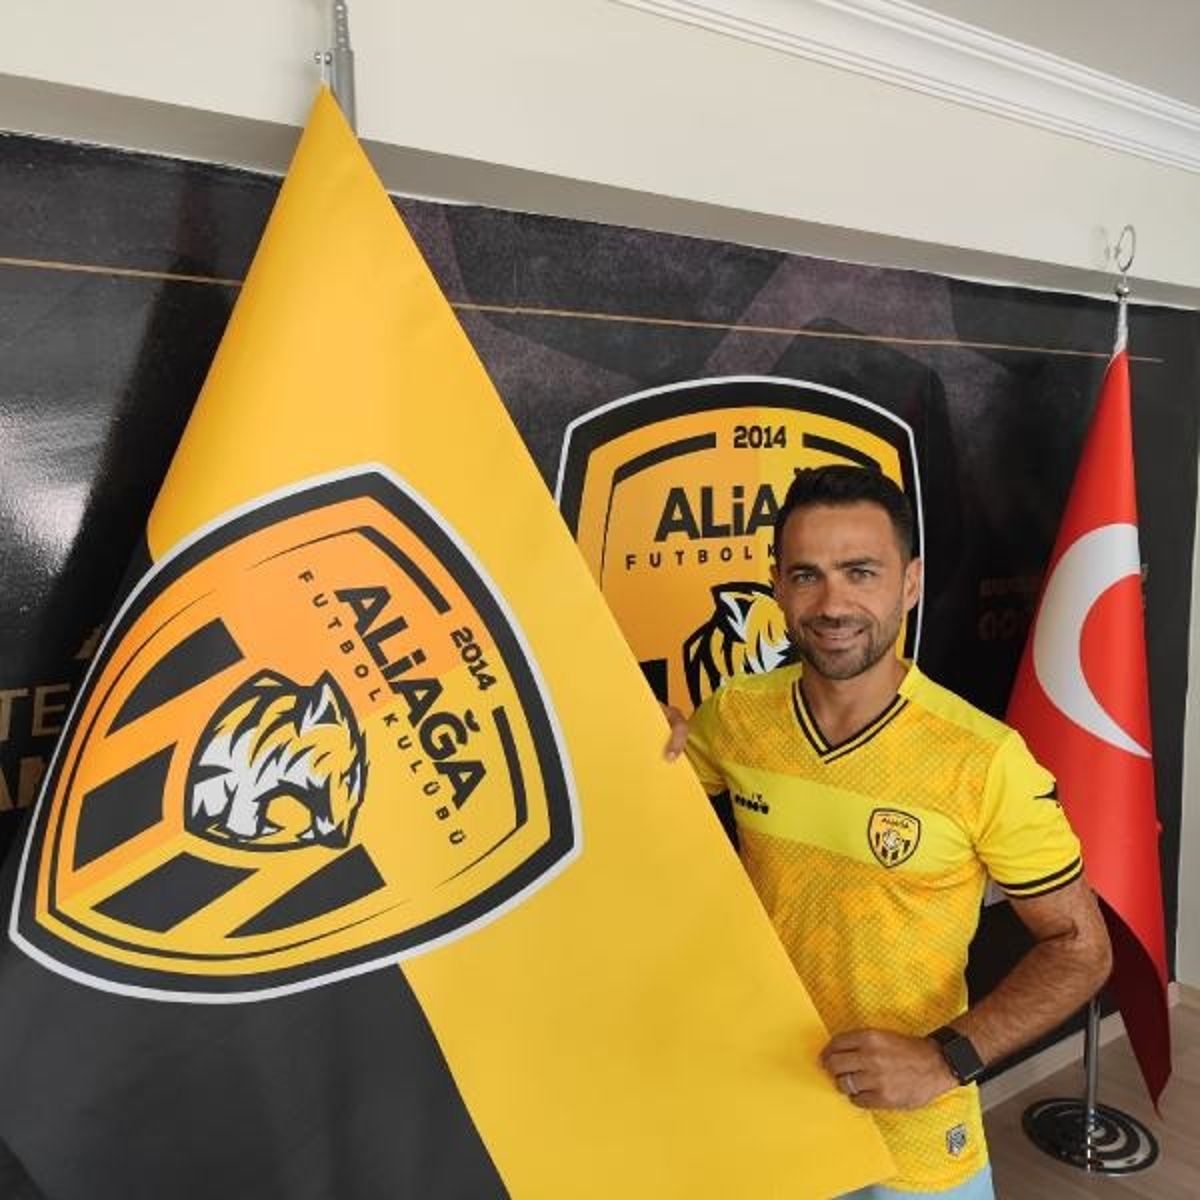 Aliağa Futbol Kulübü'nde ekip kaptanı Mithat Yaşar ile mukavele yenilendi